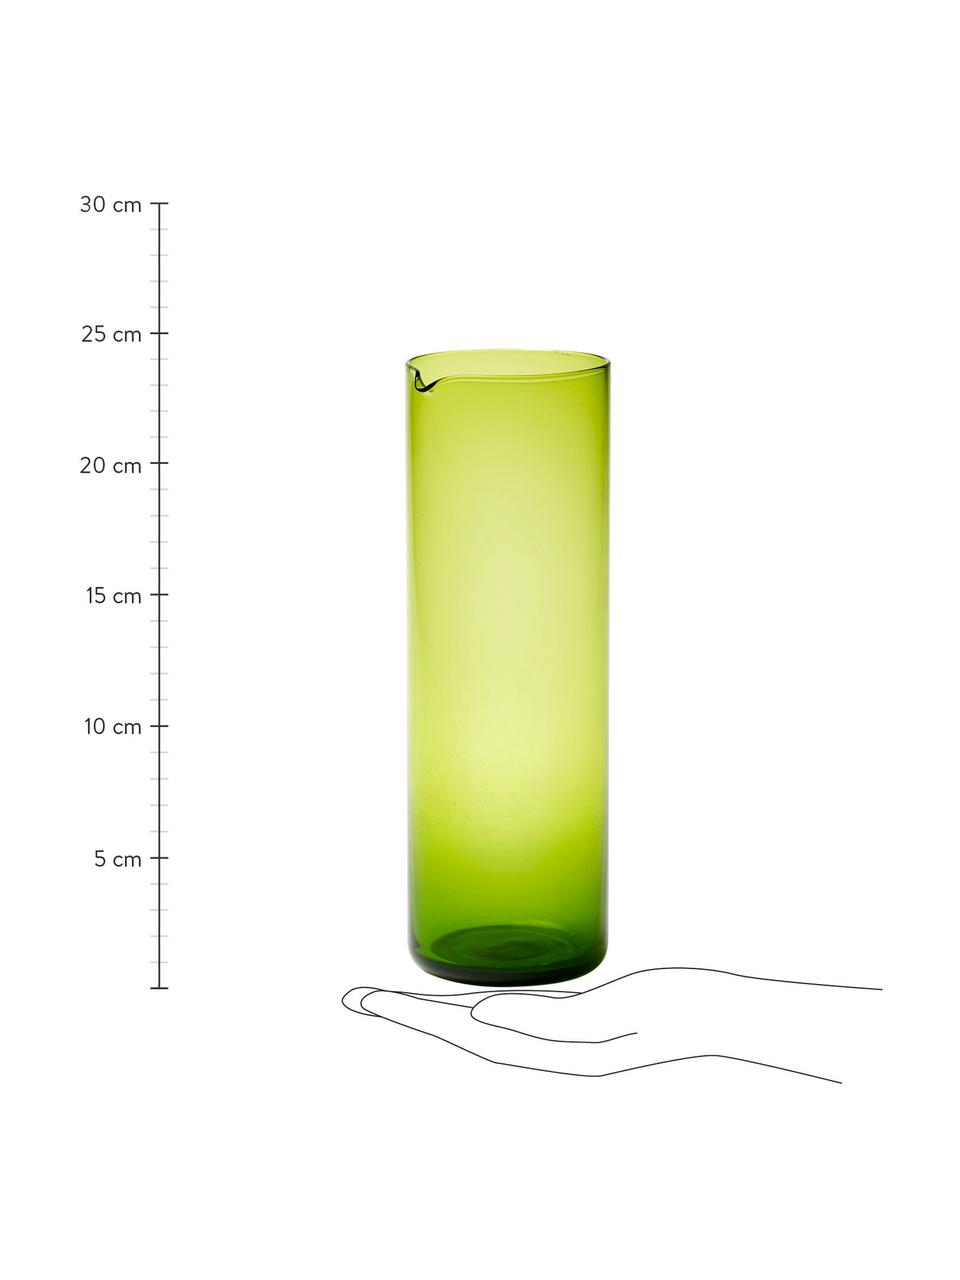 Mondgeblazen glazen karaf Bloom in groen, 1 L, Mondgeblazen glas, Groen, Ø 8 x H 24 cm, 1 L